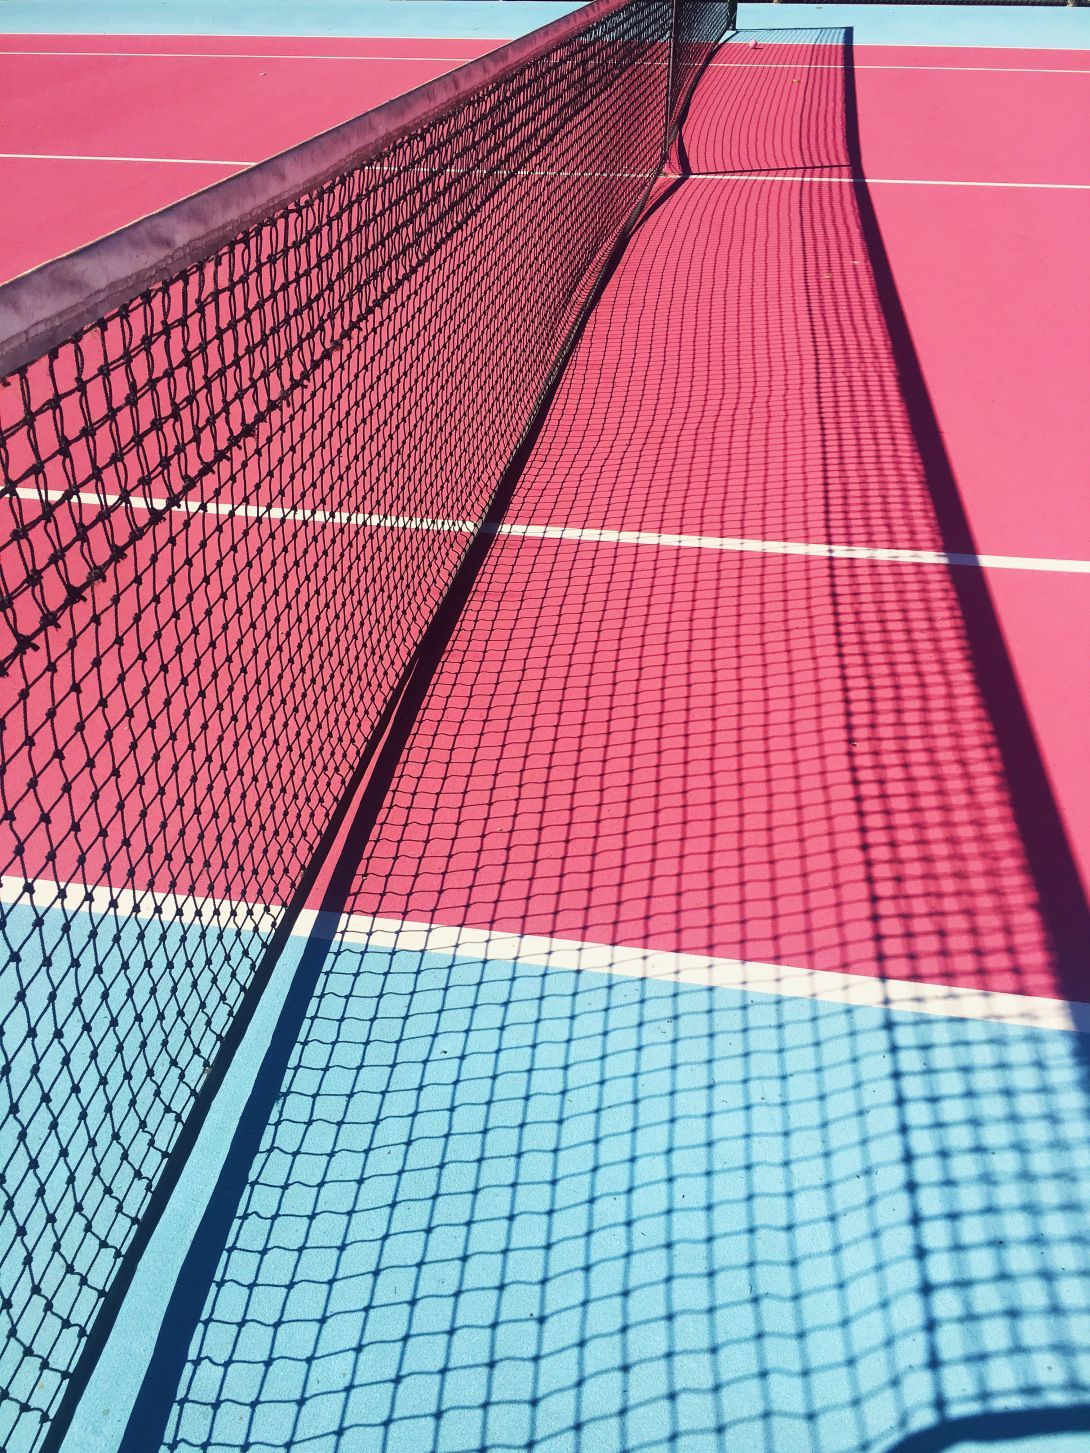 lighting. Tennis wallpaper, Tennis court